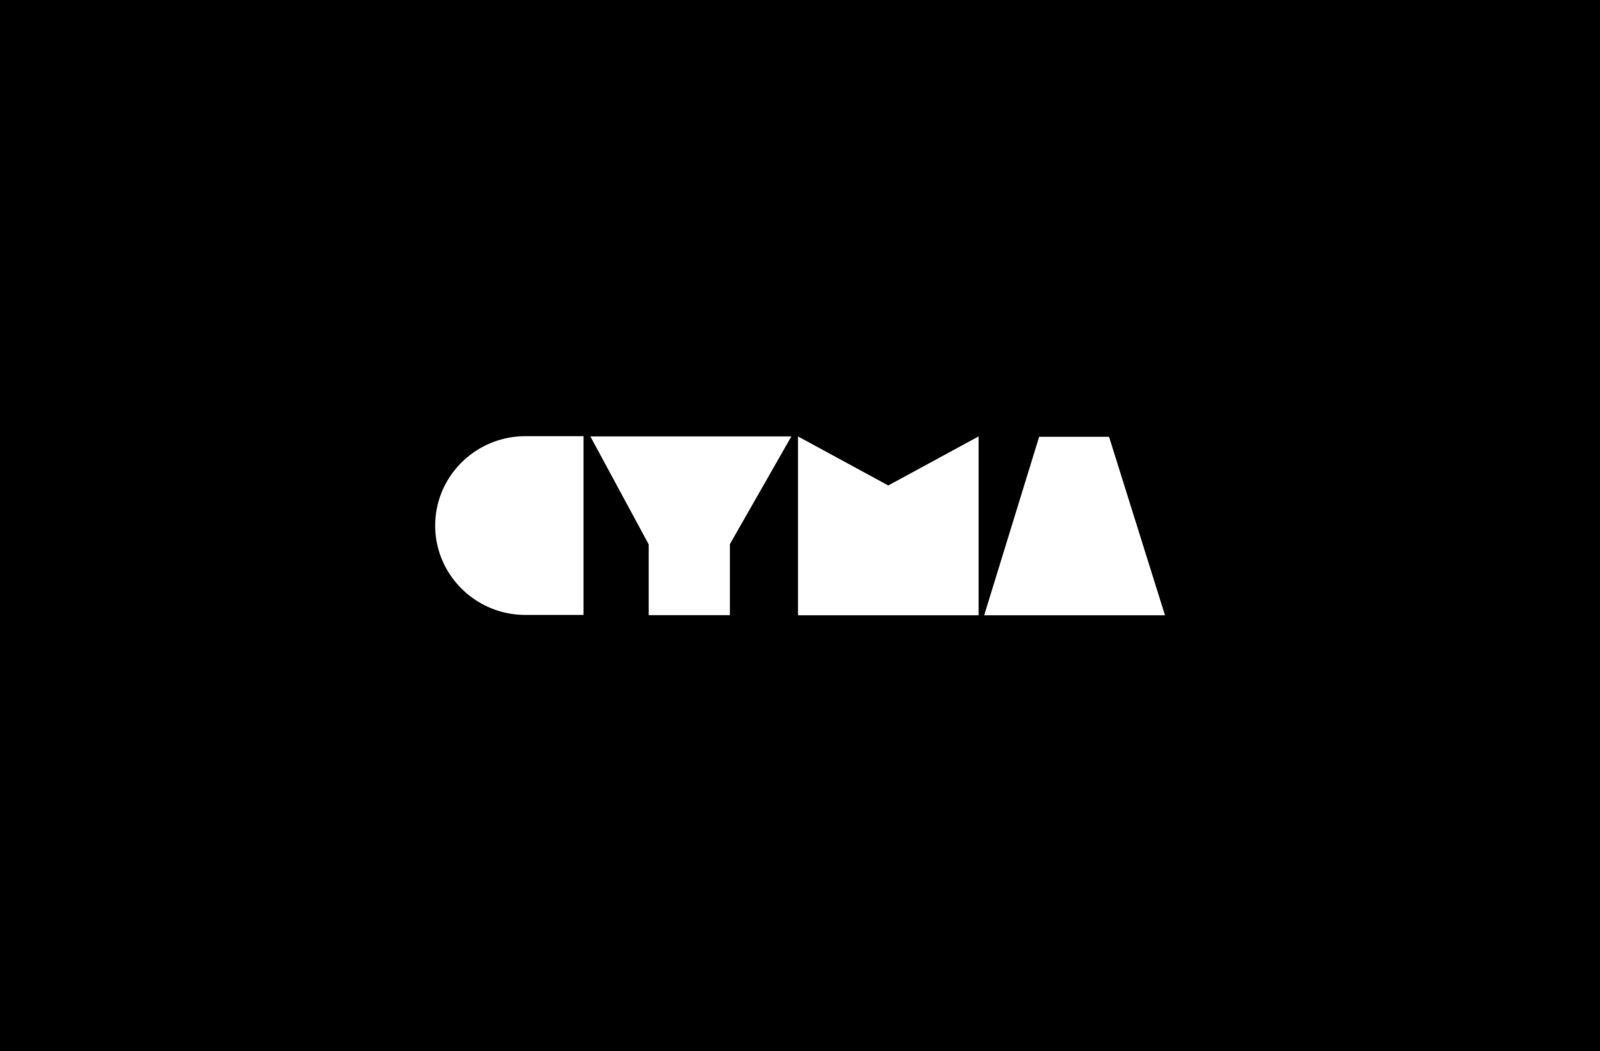 CYMA_1